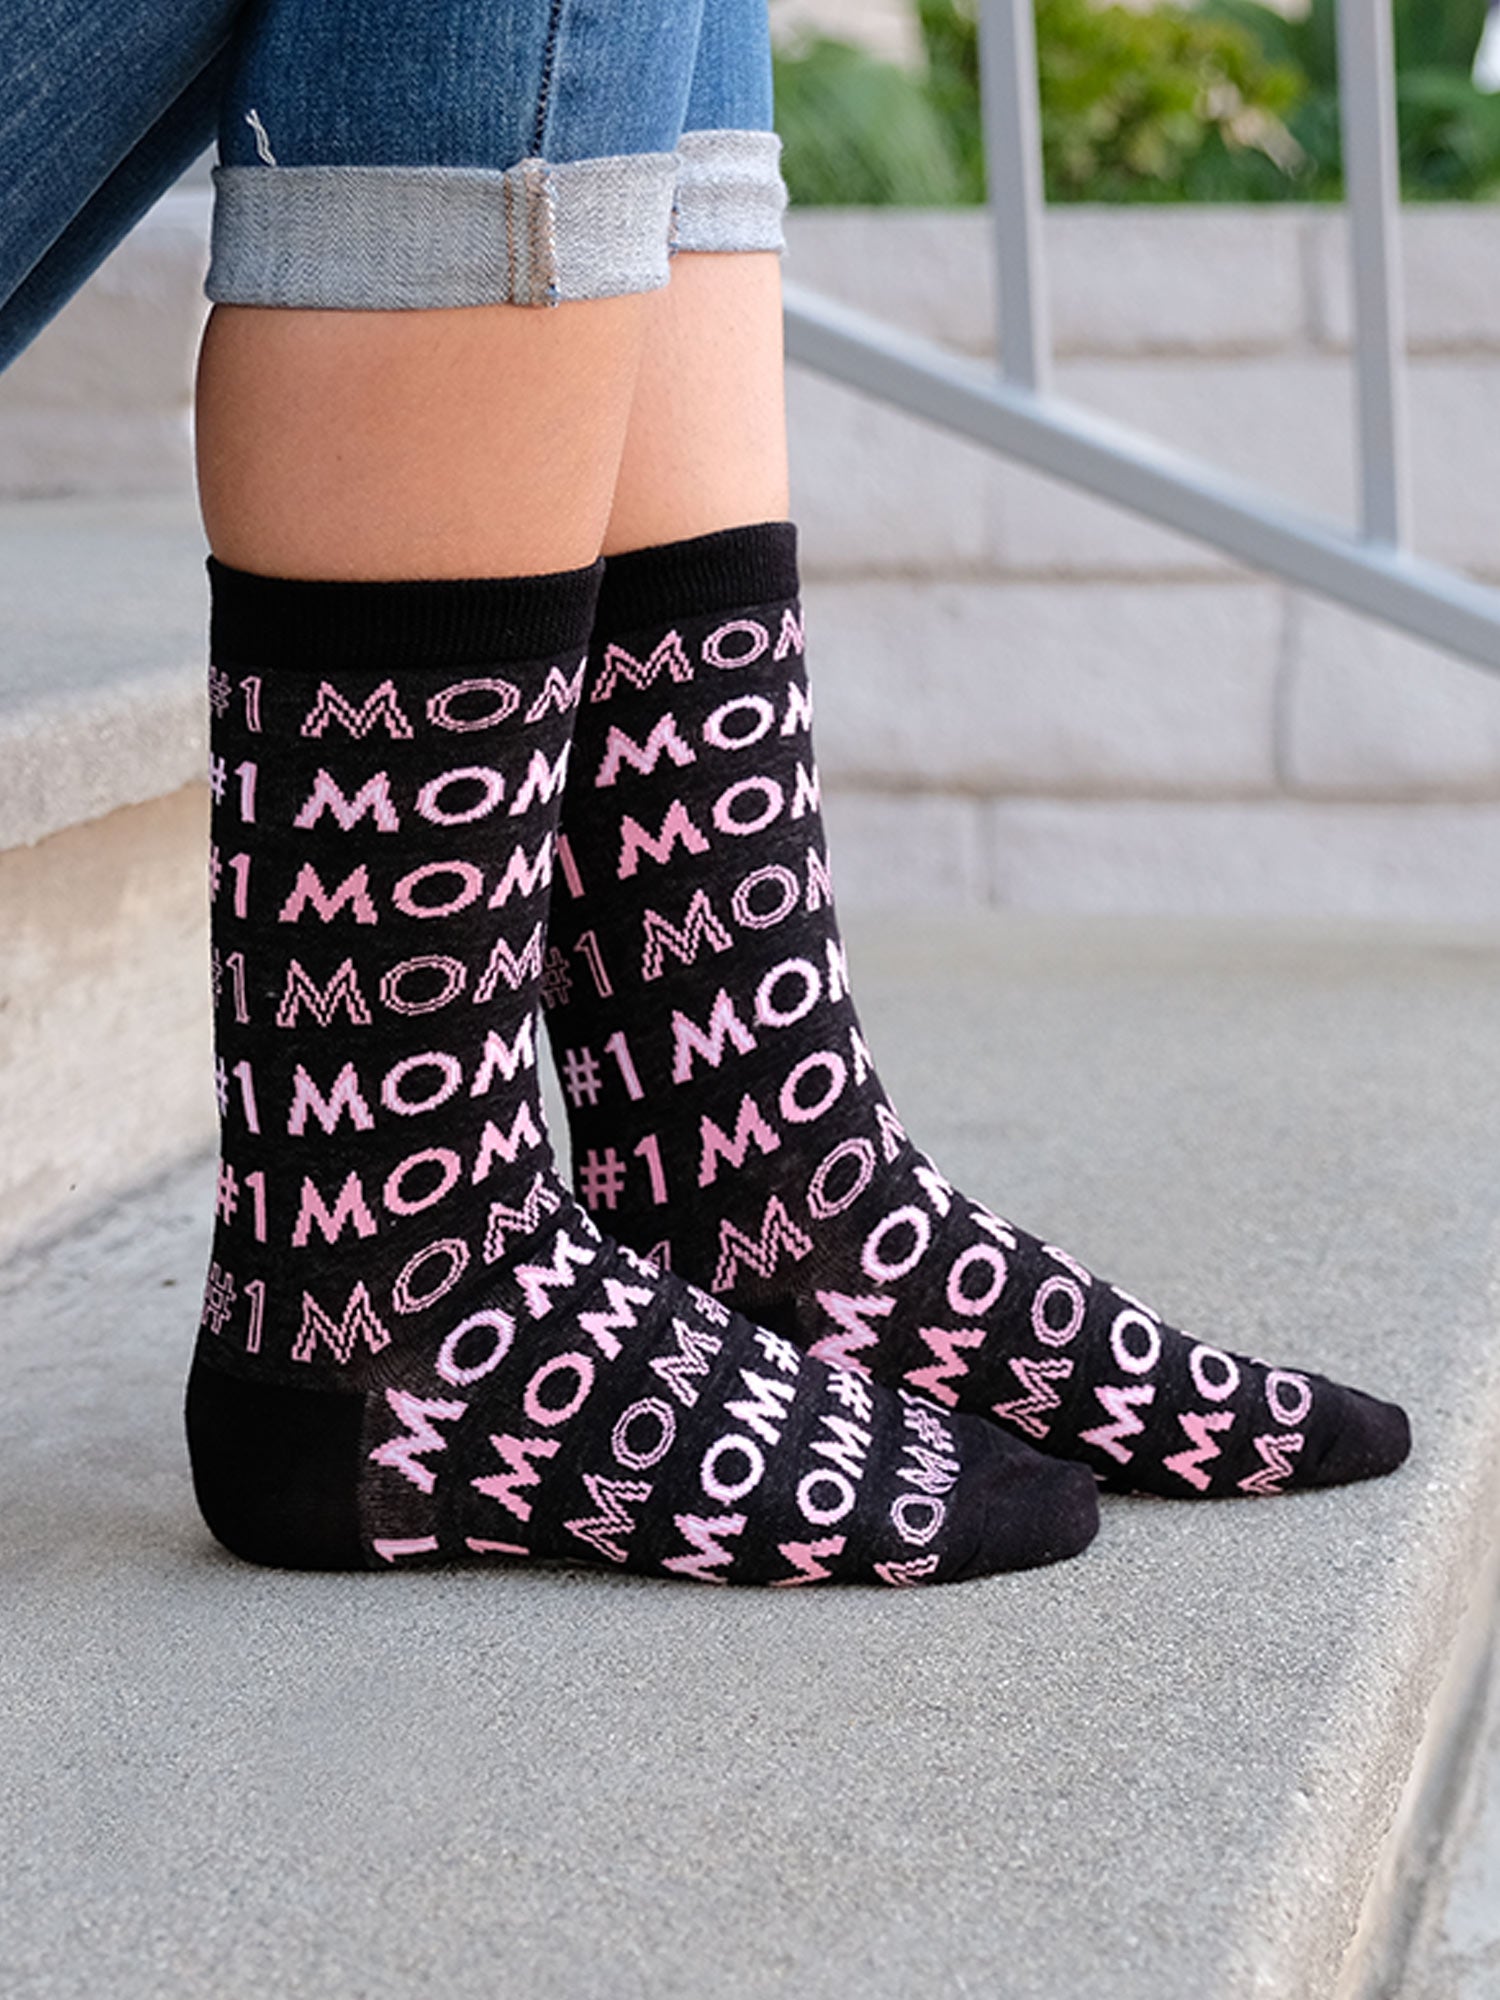 Women's #1 Mom & Best Mom Ever Novelty Crew Socks Mother's Day Gift Pack